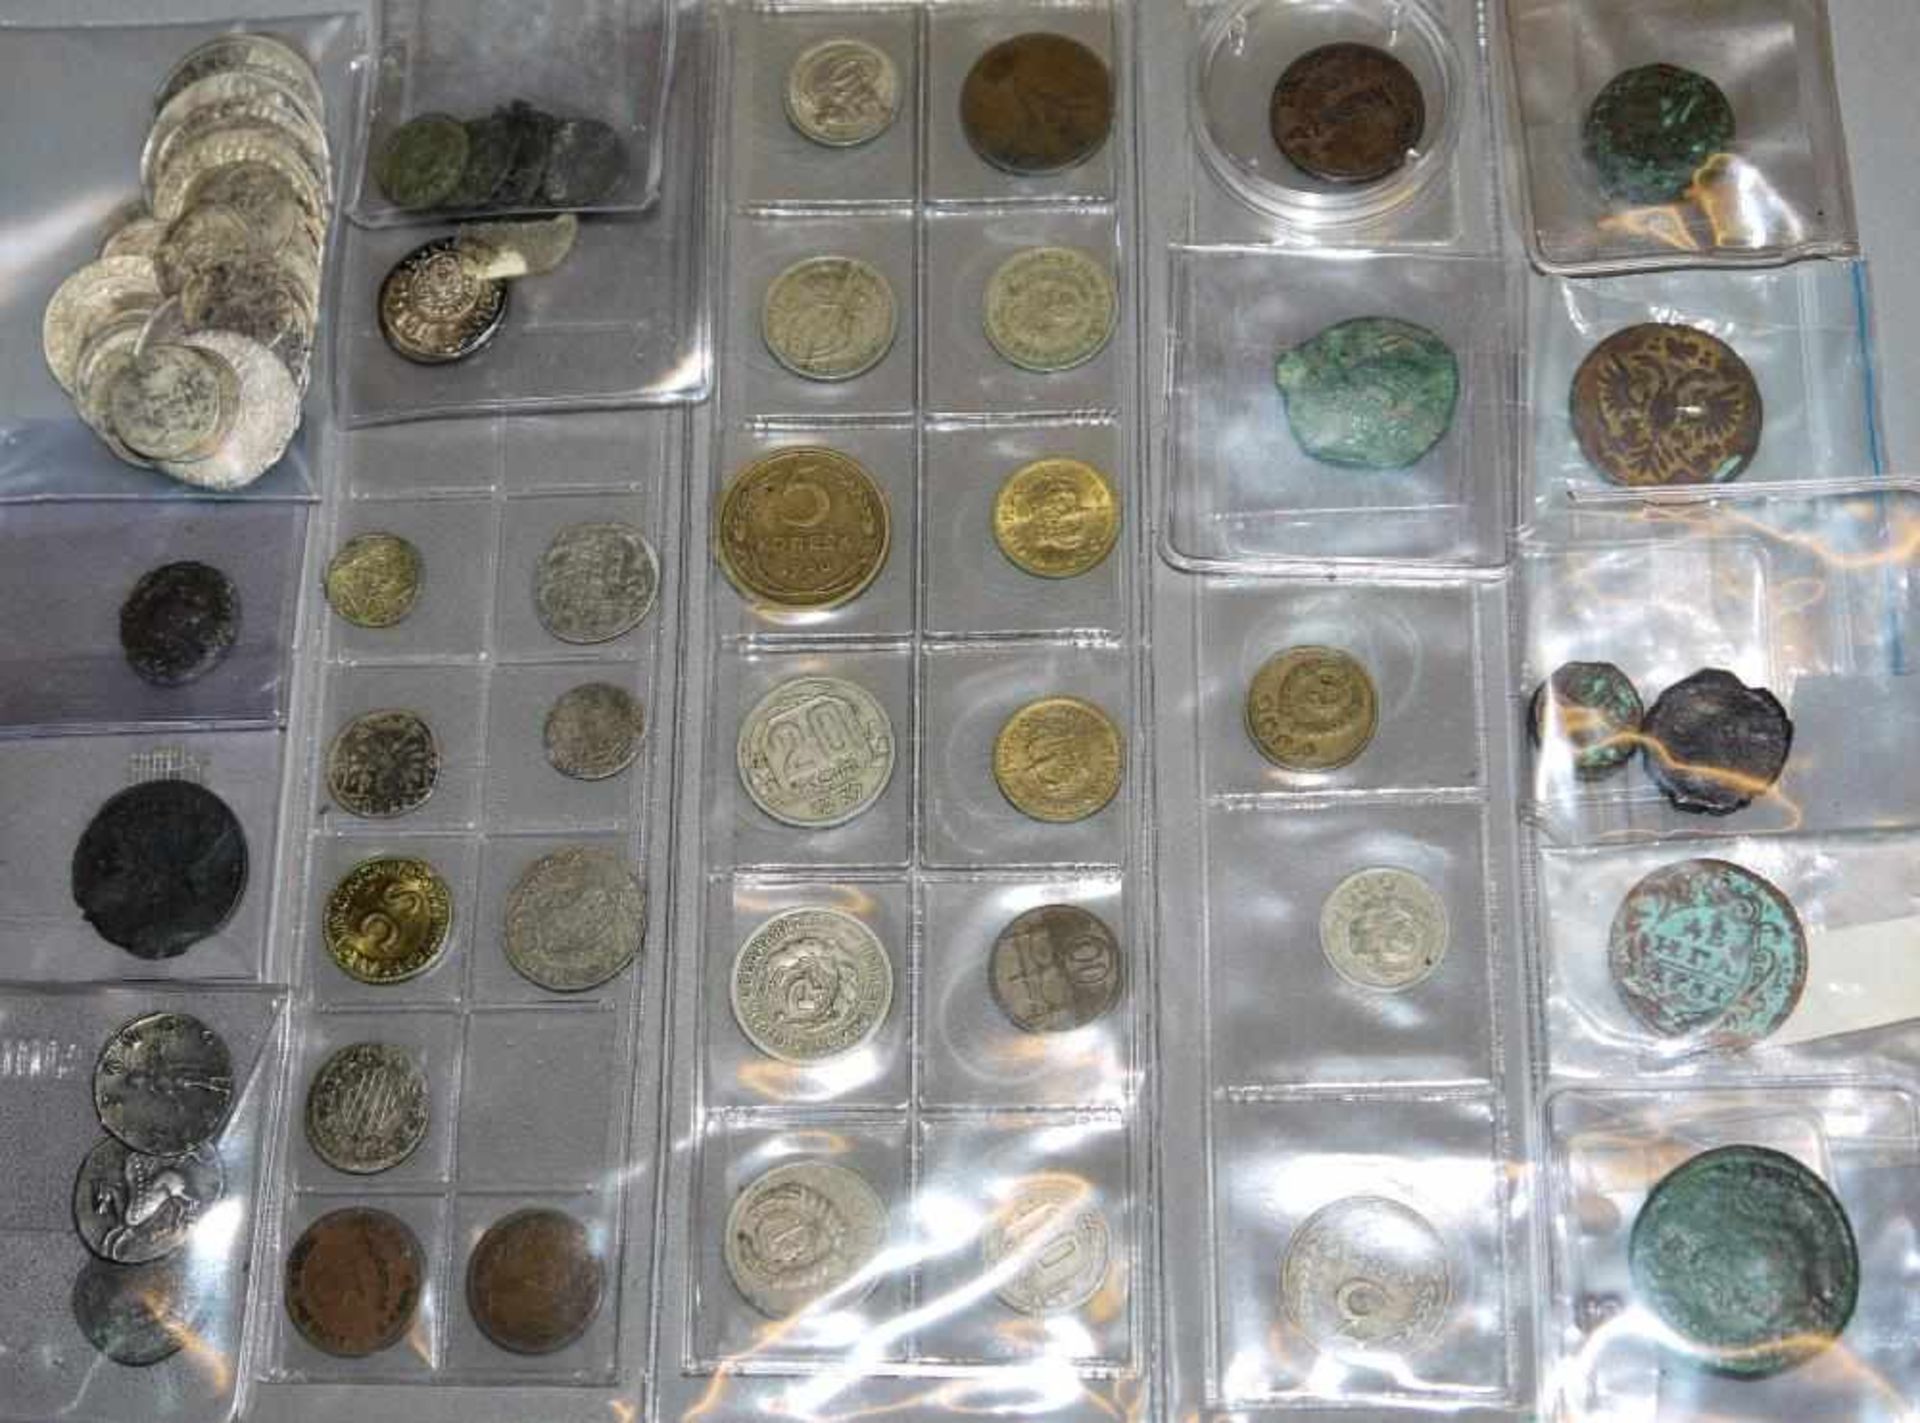 Sammlung von ca. 80, teils sehr alten Münzen, Sachsen, Baltikum, Riga u.a. Dabei ca. 50 silberne